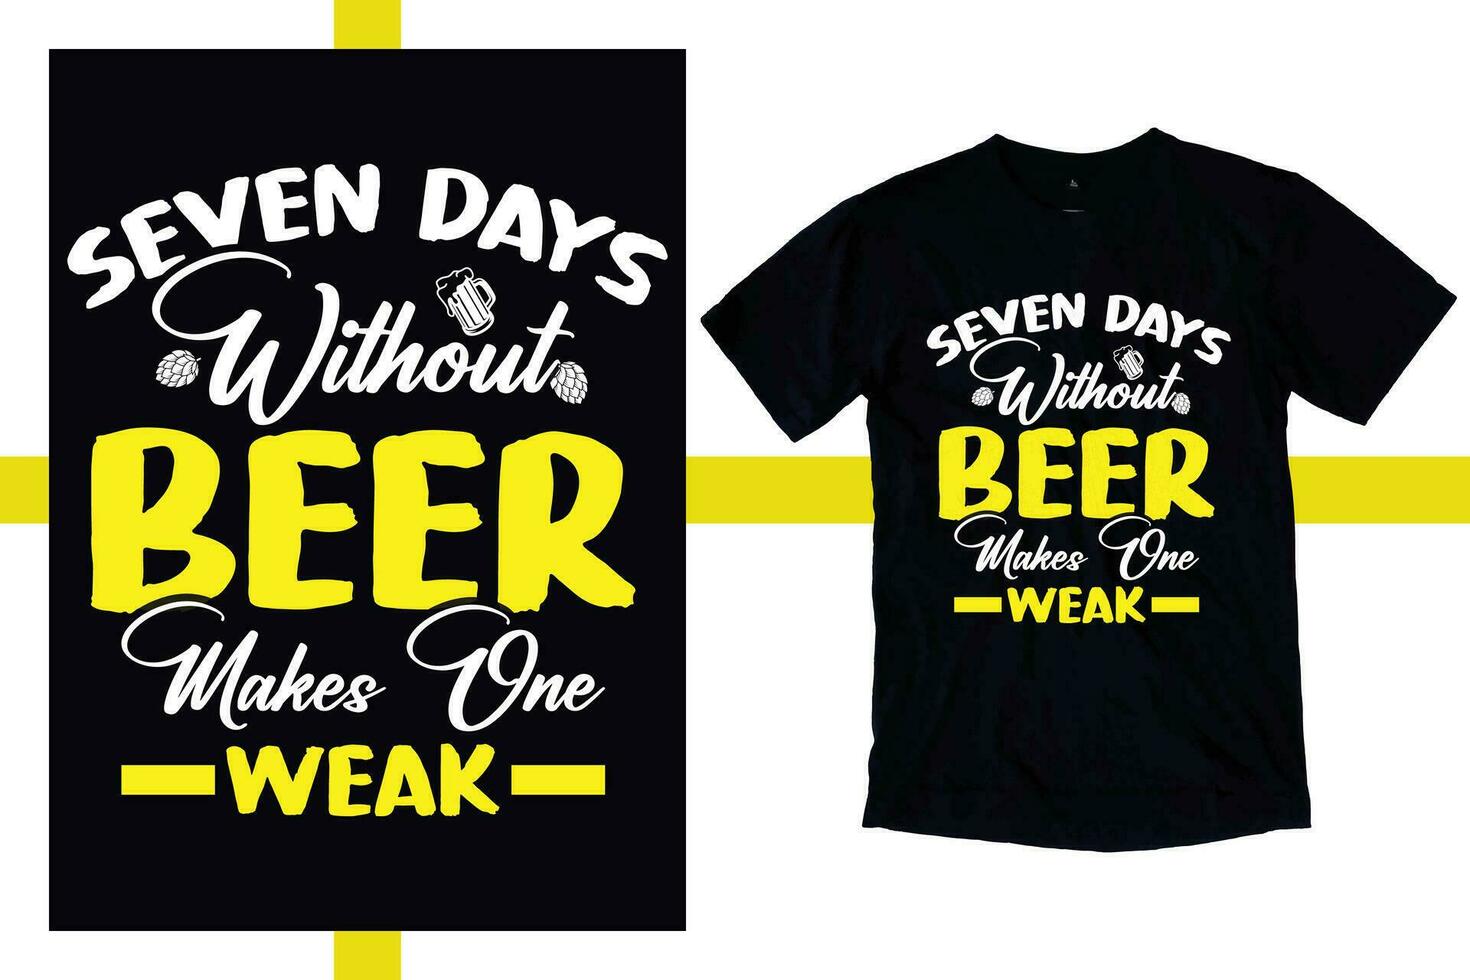 sju dagar utan öl Arbetar ett vecka tshirt. öl hantverk tshirt. crafting Skål vektor illustration av pub emblem för unik öl etiketter och bar grafik